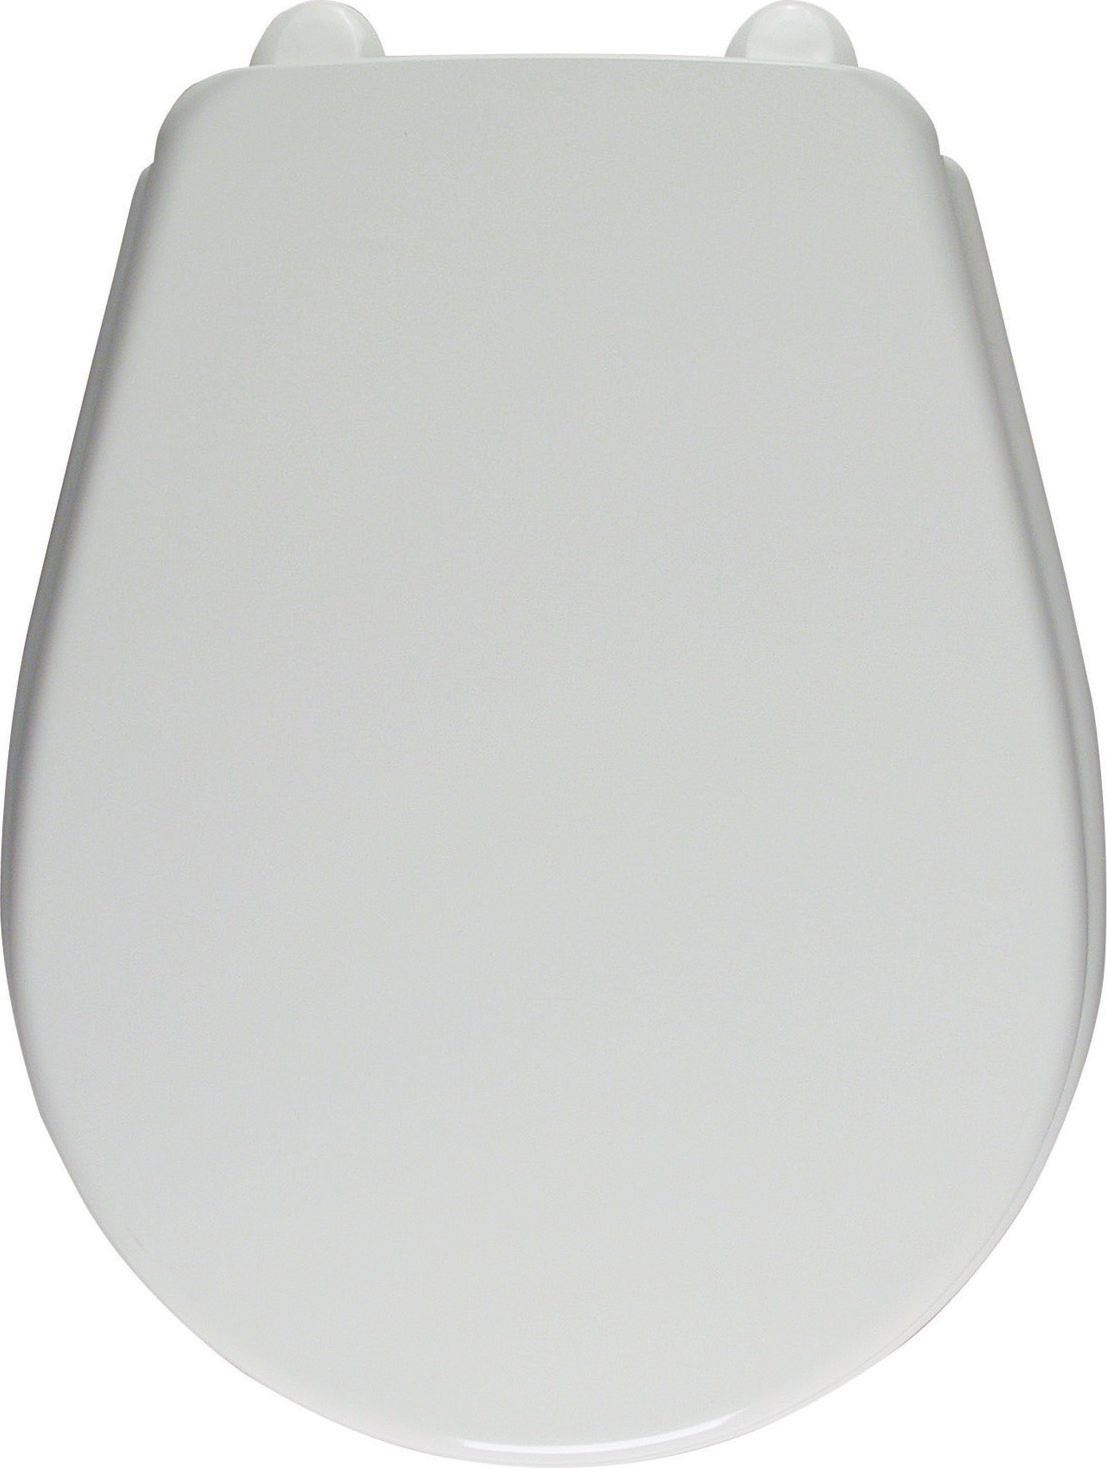 Ceravid Toilettendeckel Piamo für kleines Stand-WC, C50015000